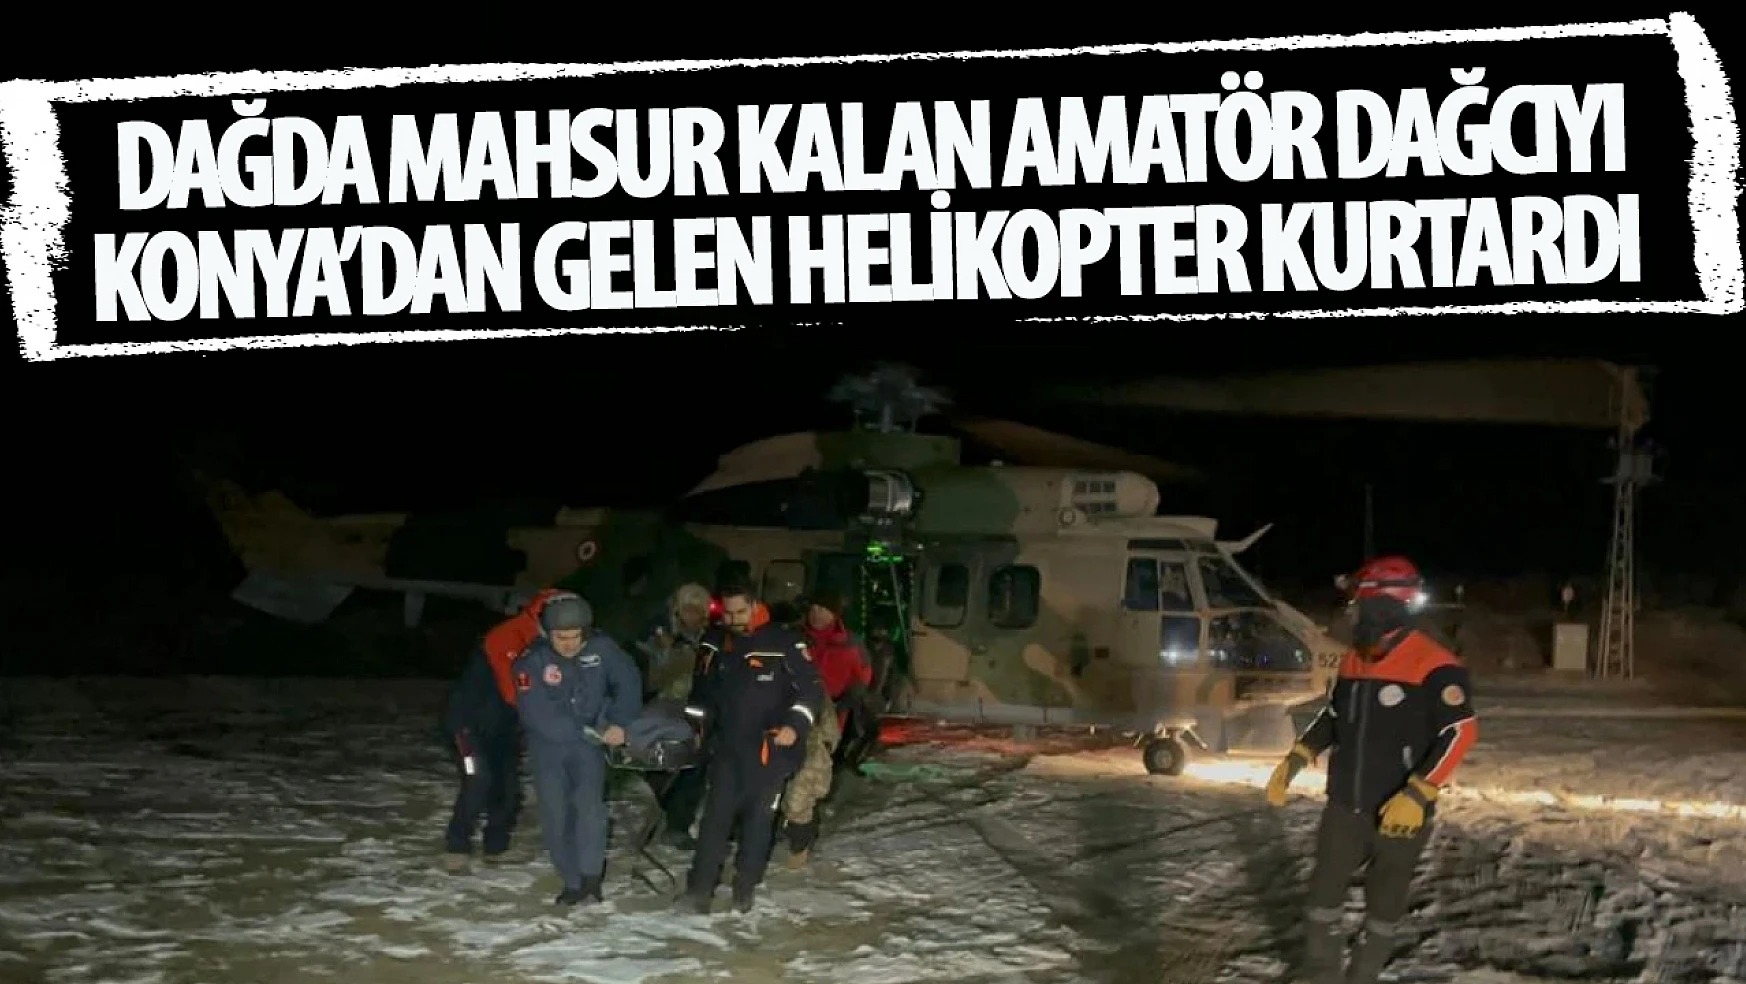 Dağcı kadın Konya'dan gönderilen helikopter ile kurtarıldı!